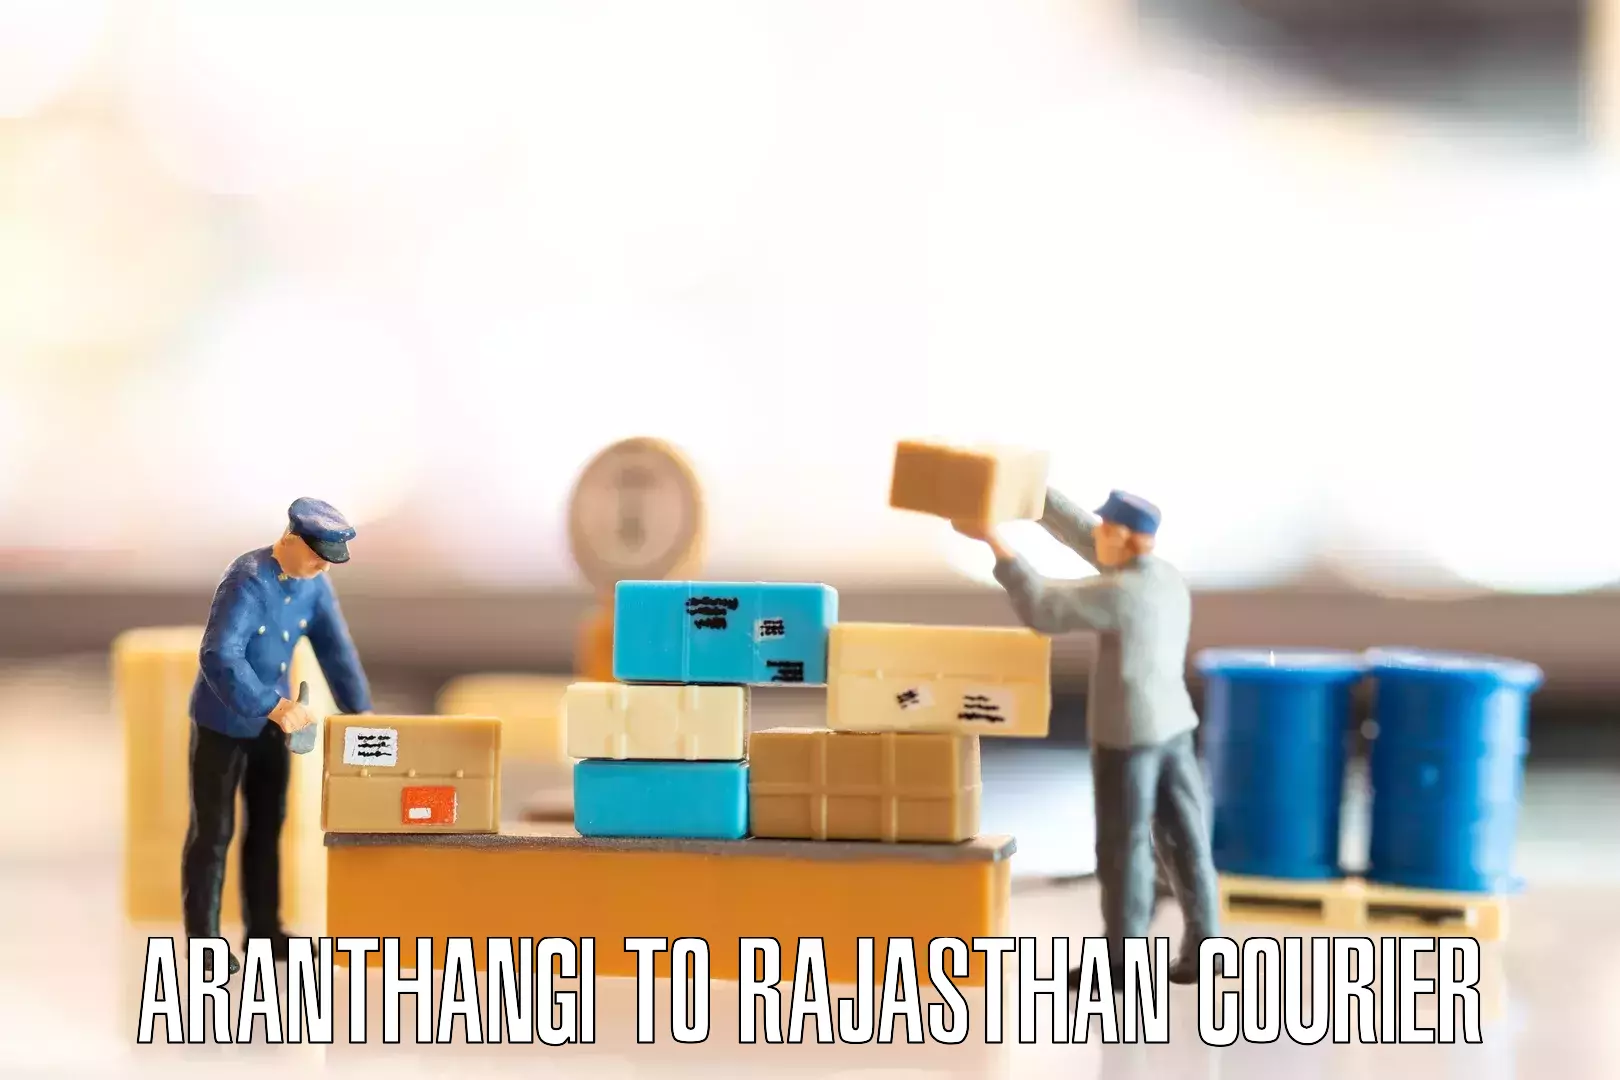 Moving and packing experts Aranthangi to Nainwa